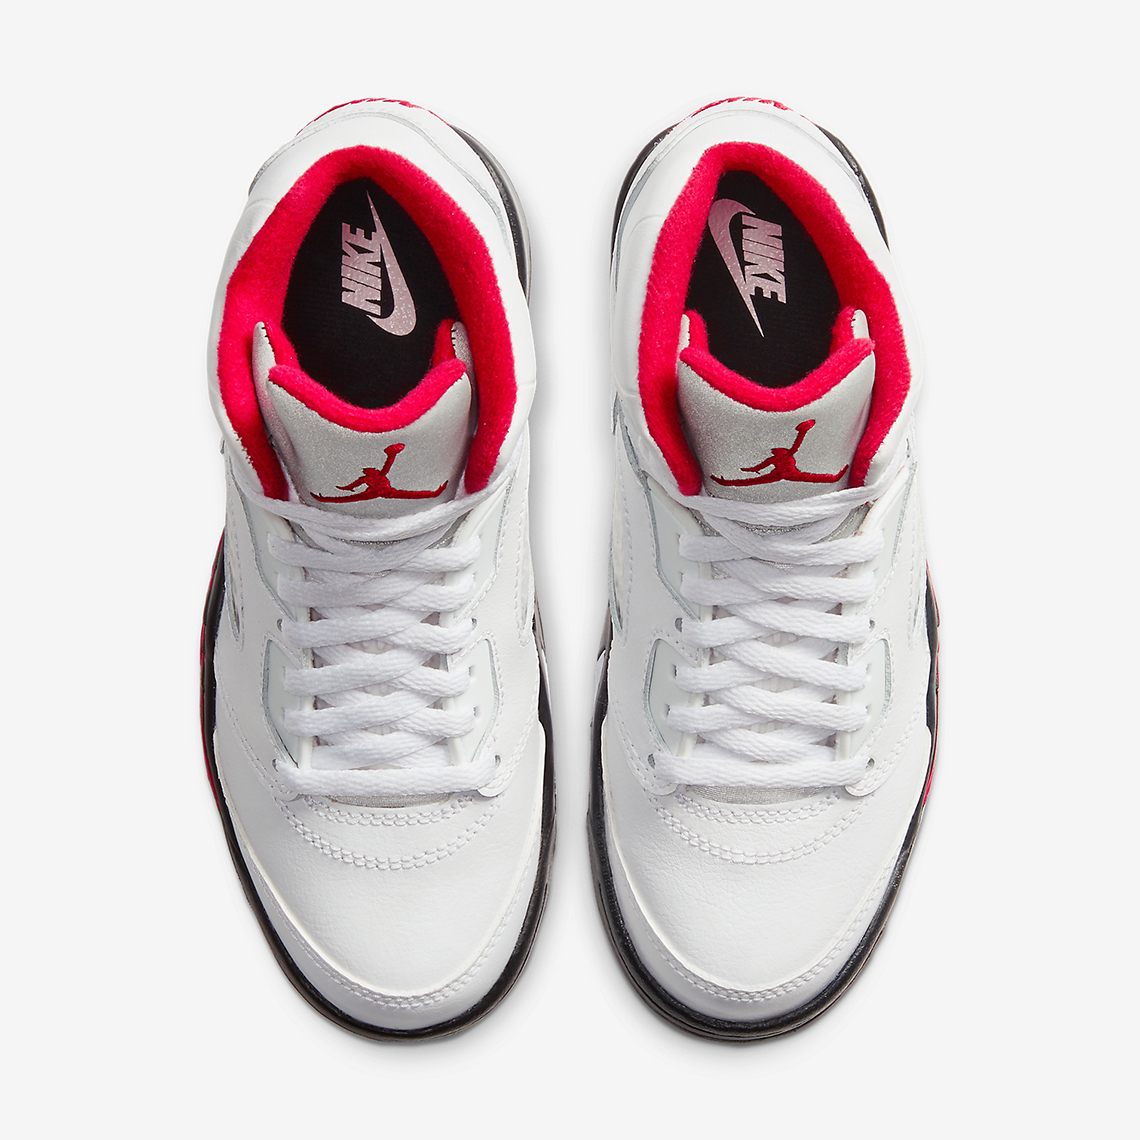 Air Jordan 5 Fire Red 2020 Store List | SneakerNews.com